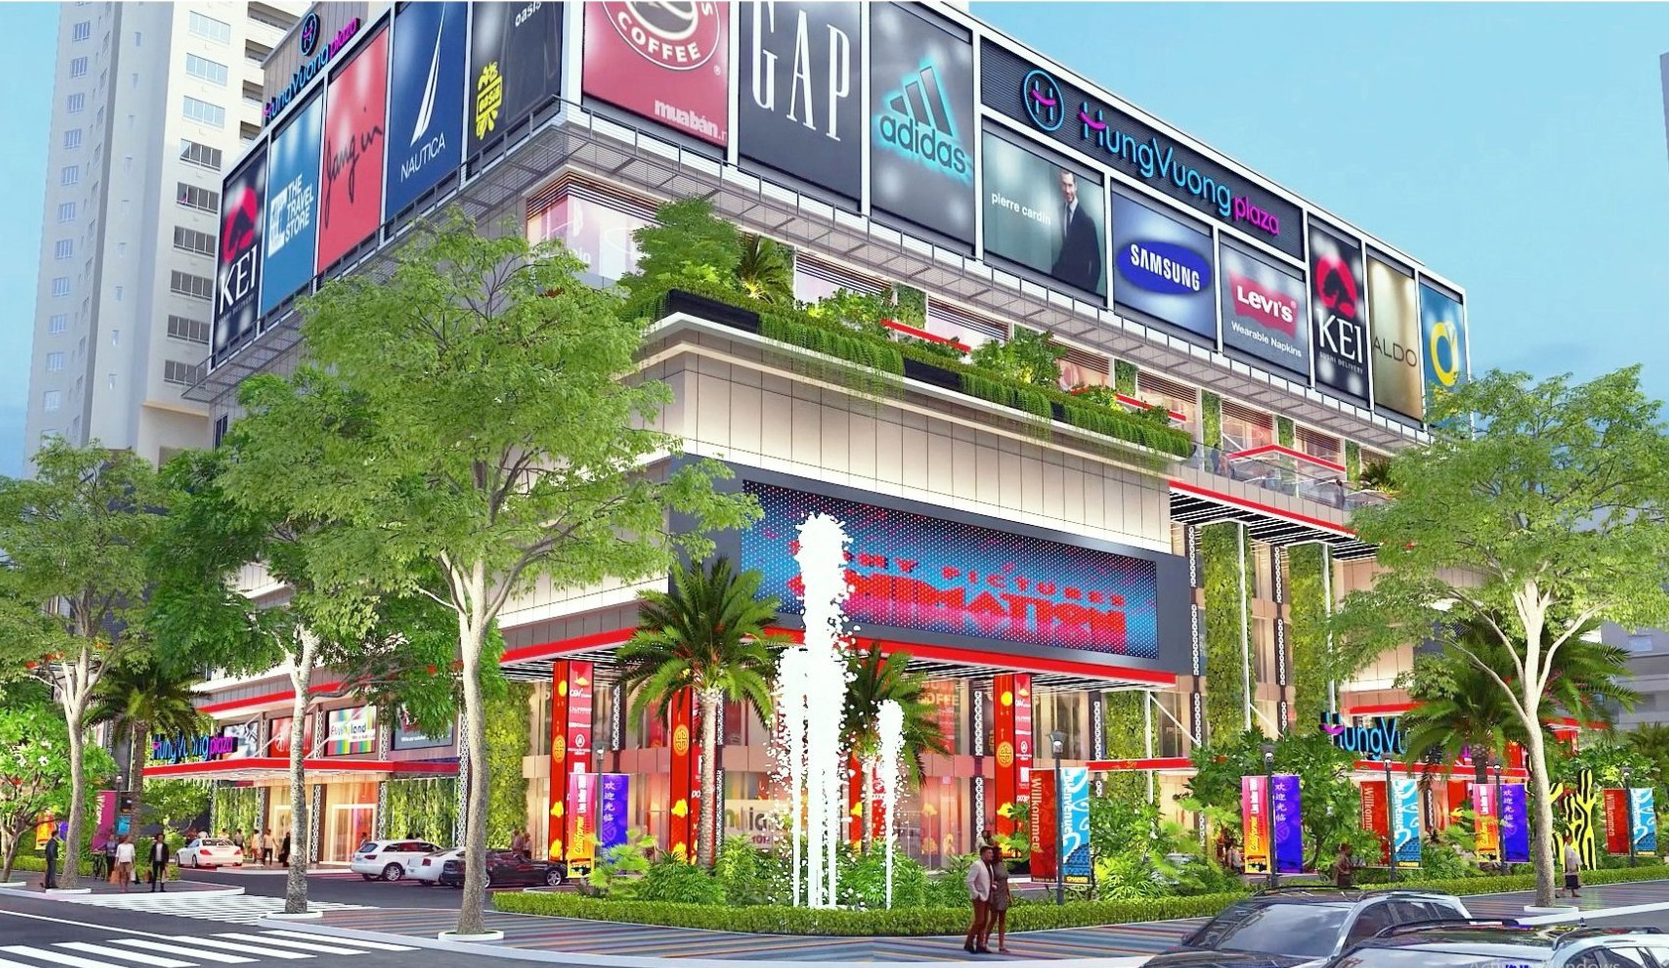 “Sao y bản chính” Vạn Hạnh Mall cho Hùng Vương Plaza, ông Trần Lệ Nguyên liệu có thành công? - Ảnh 2.